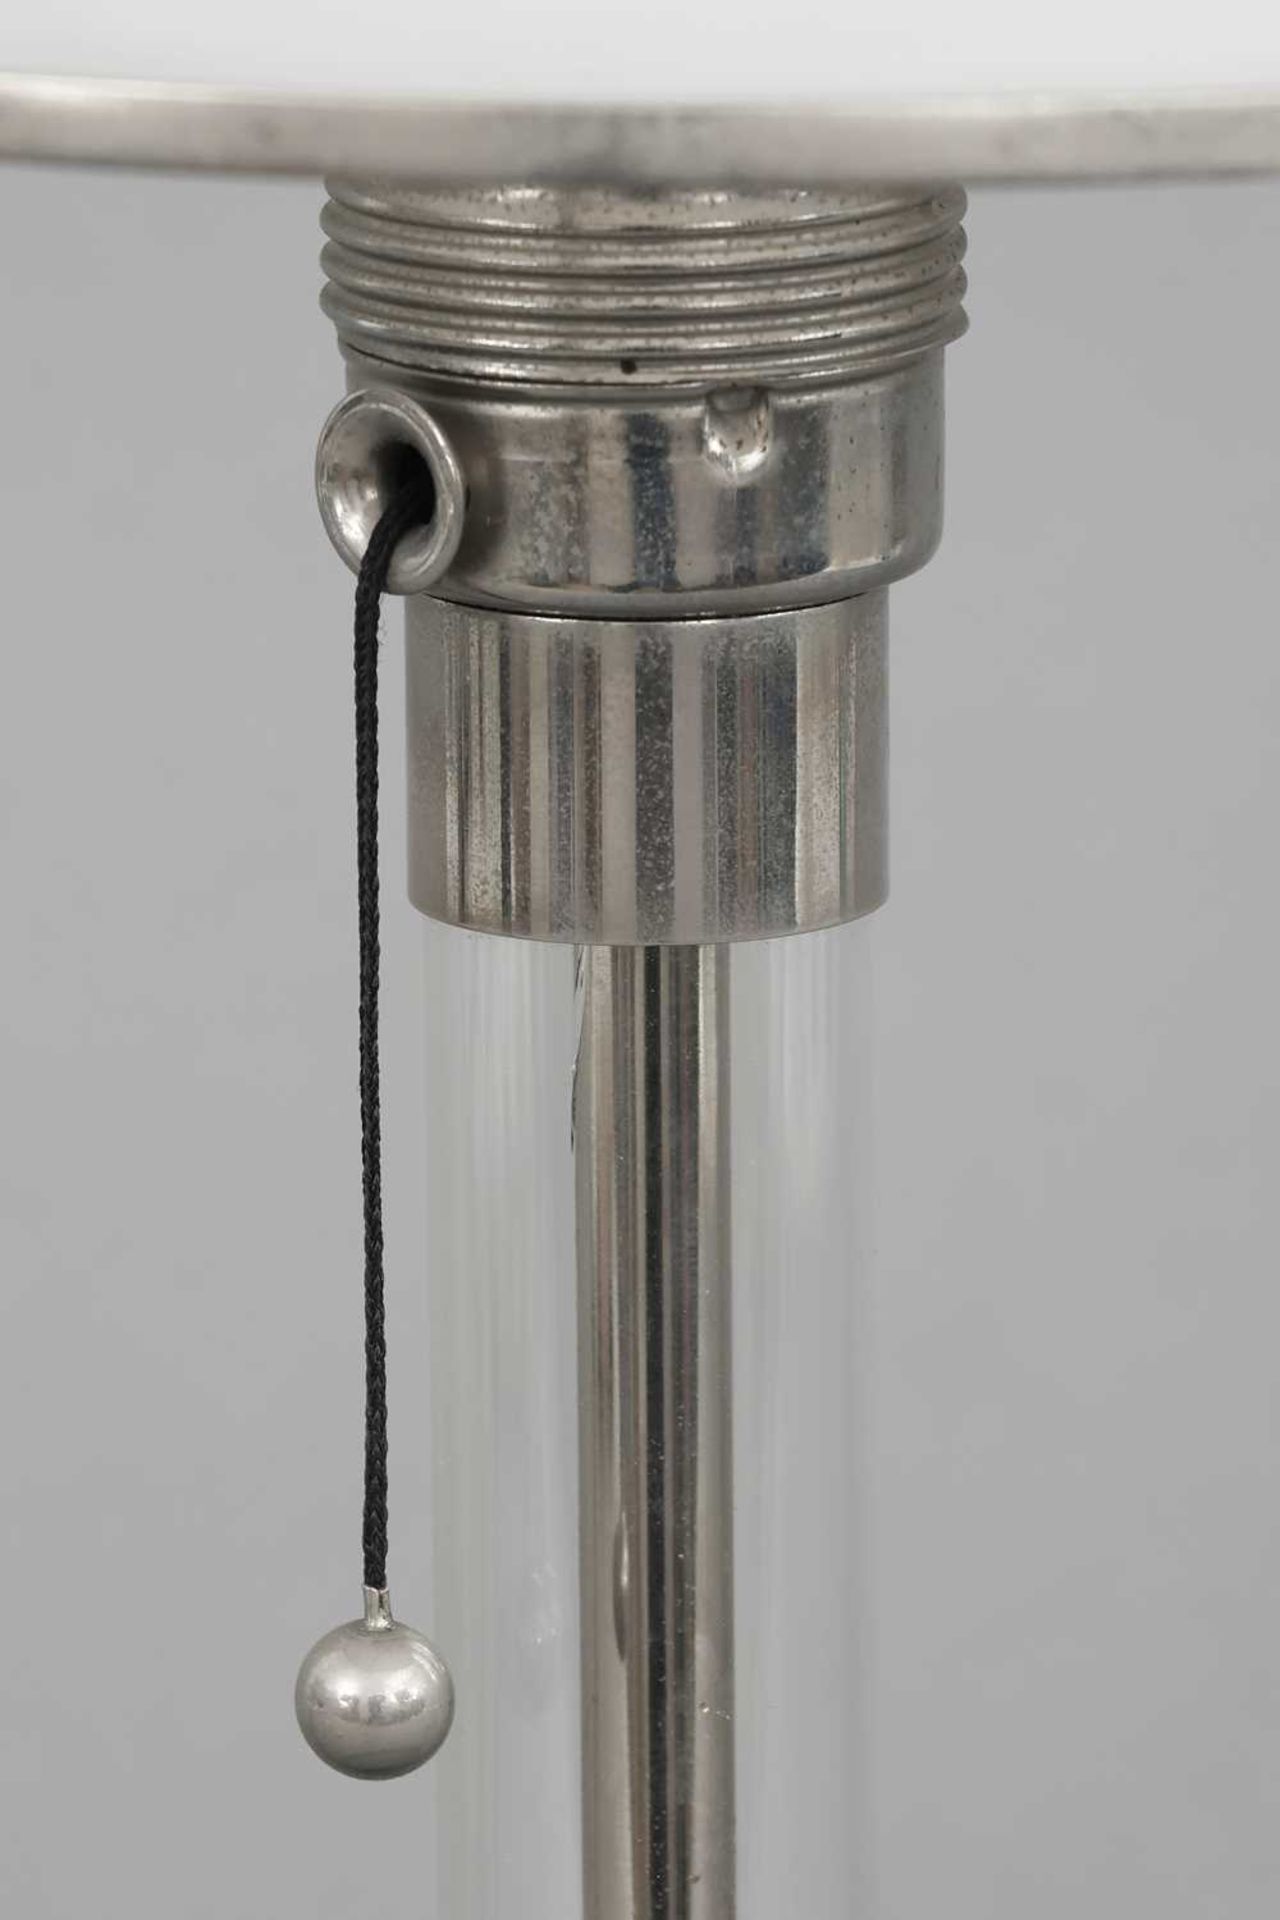 WAGENFELD "WG 24" Tischlampe - Image 2 of 2